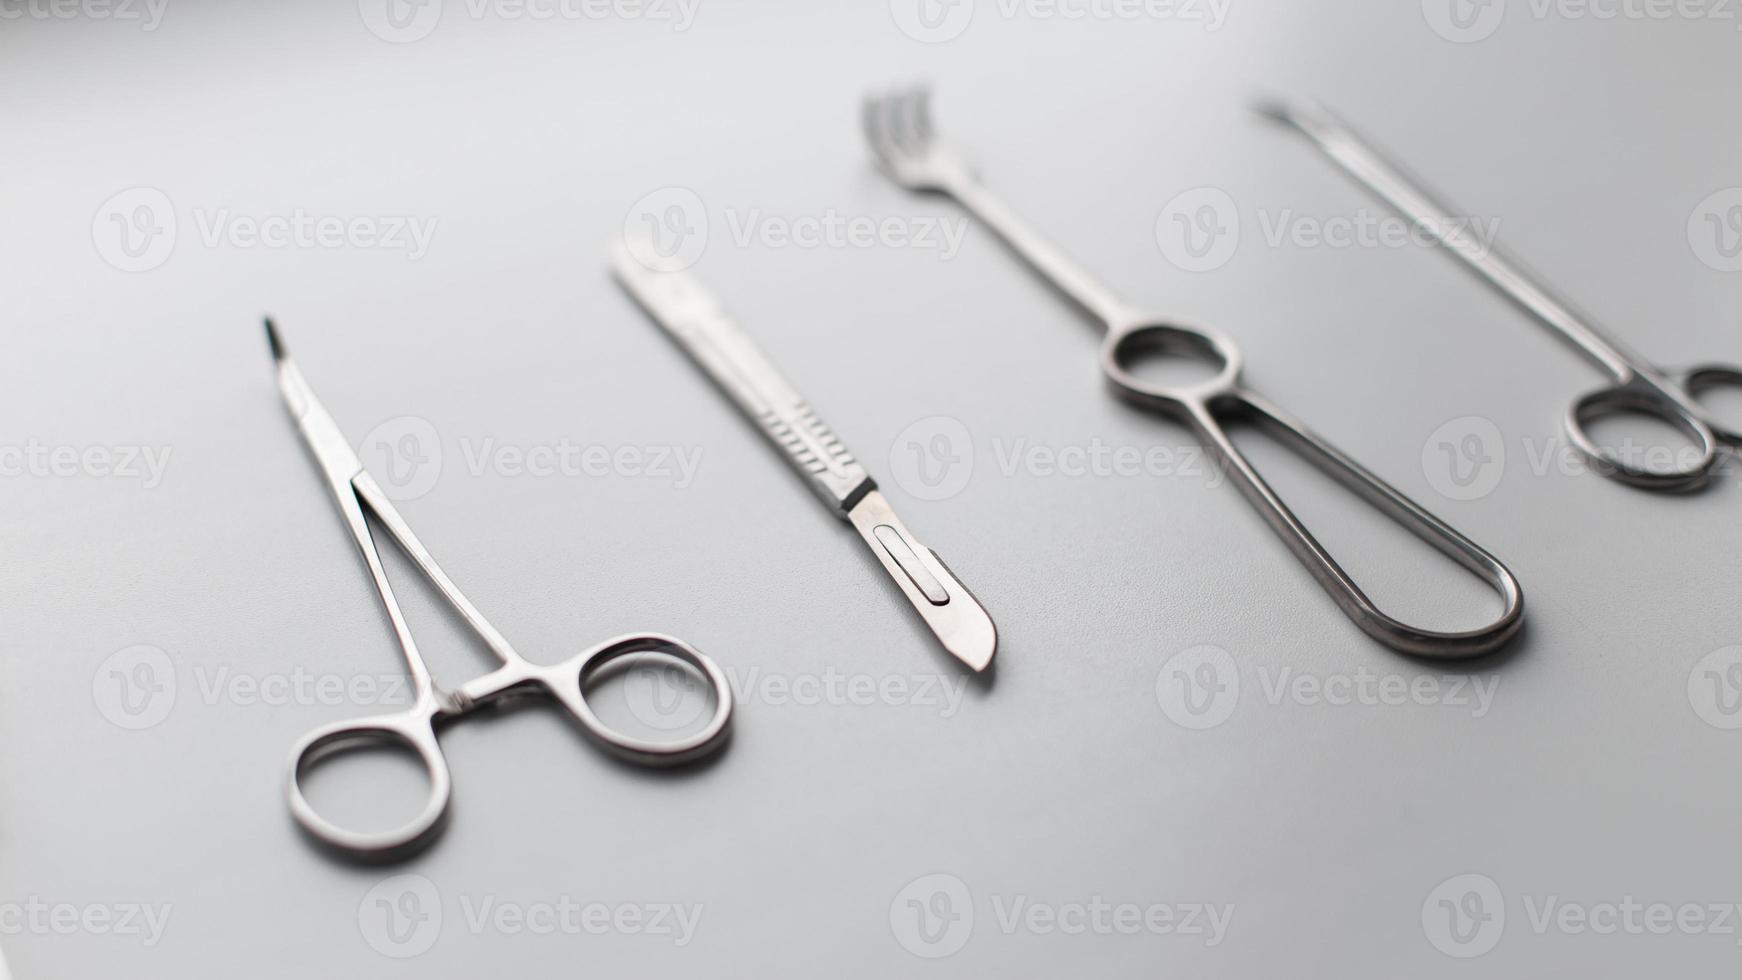 ensemble métallique d'instruments médicaux lame de scalpel, ciseaux, pinces, pinces, pinces sur fond blanc photo